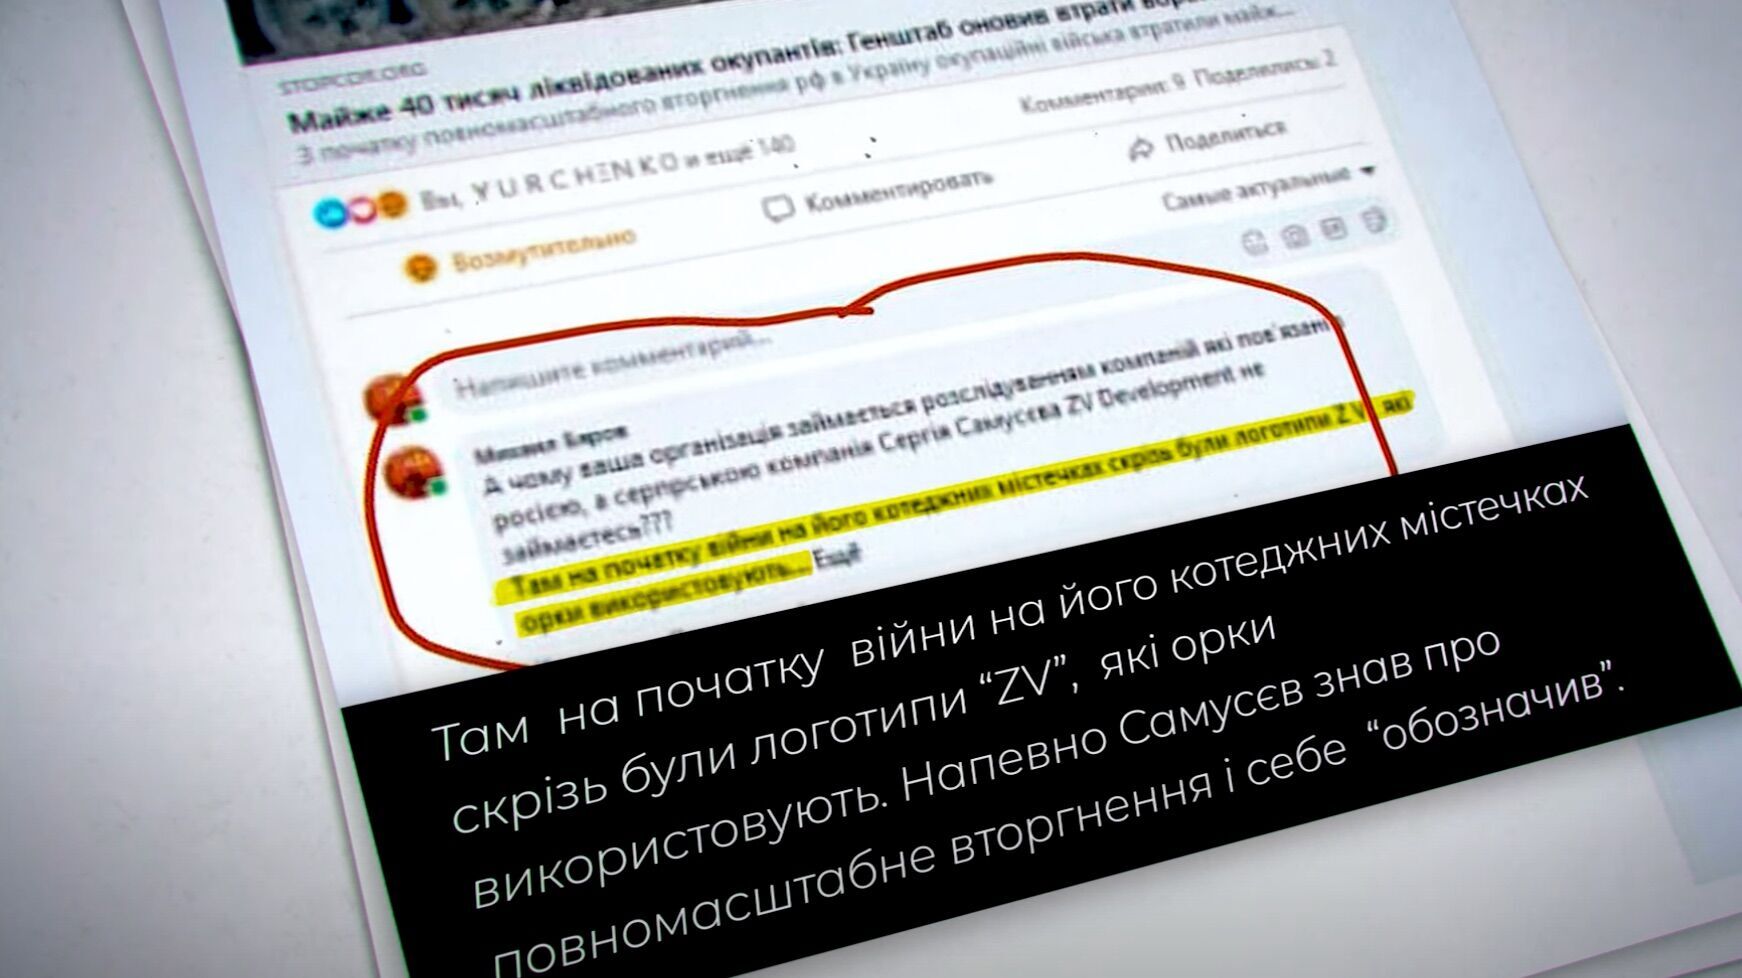 Припускають, що символами ZV Самусєв ‘’промаркував’’ свої об’єкти на Київщині